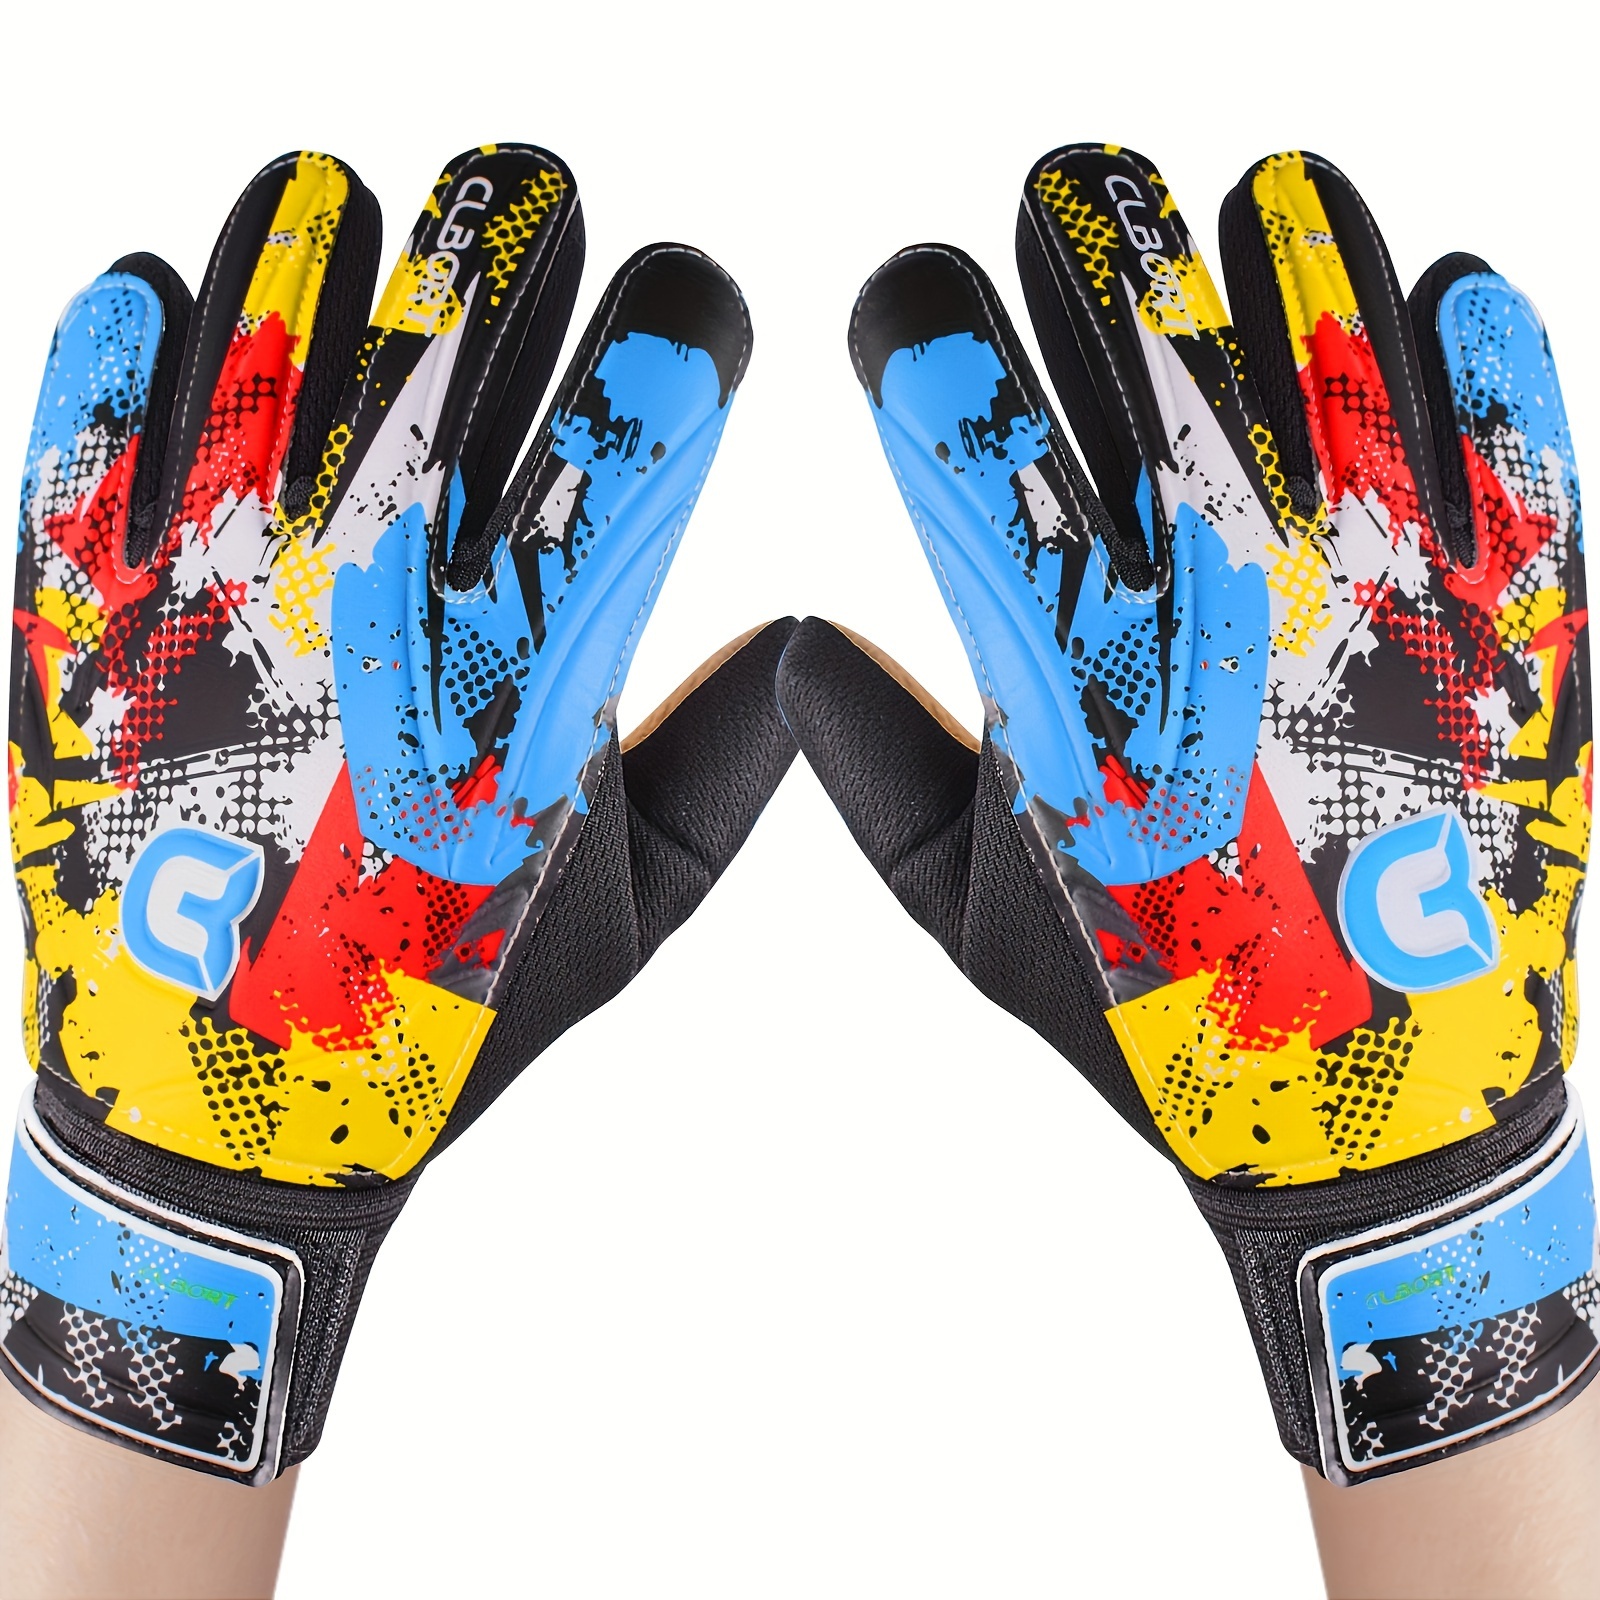 

Soccer Goalkeeper Gloves, Graffiti Style Goalkeeper Gloves With Strong Grip, Non-slip Soccer Gloves